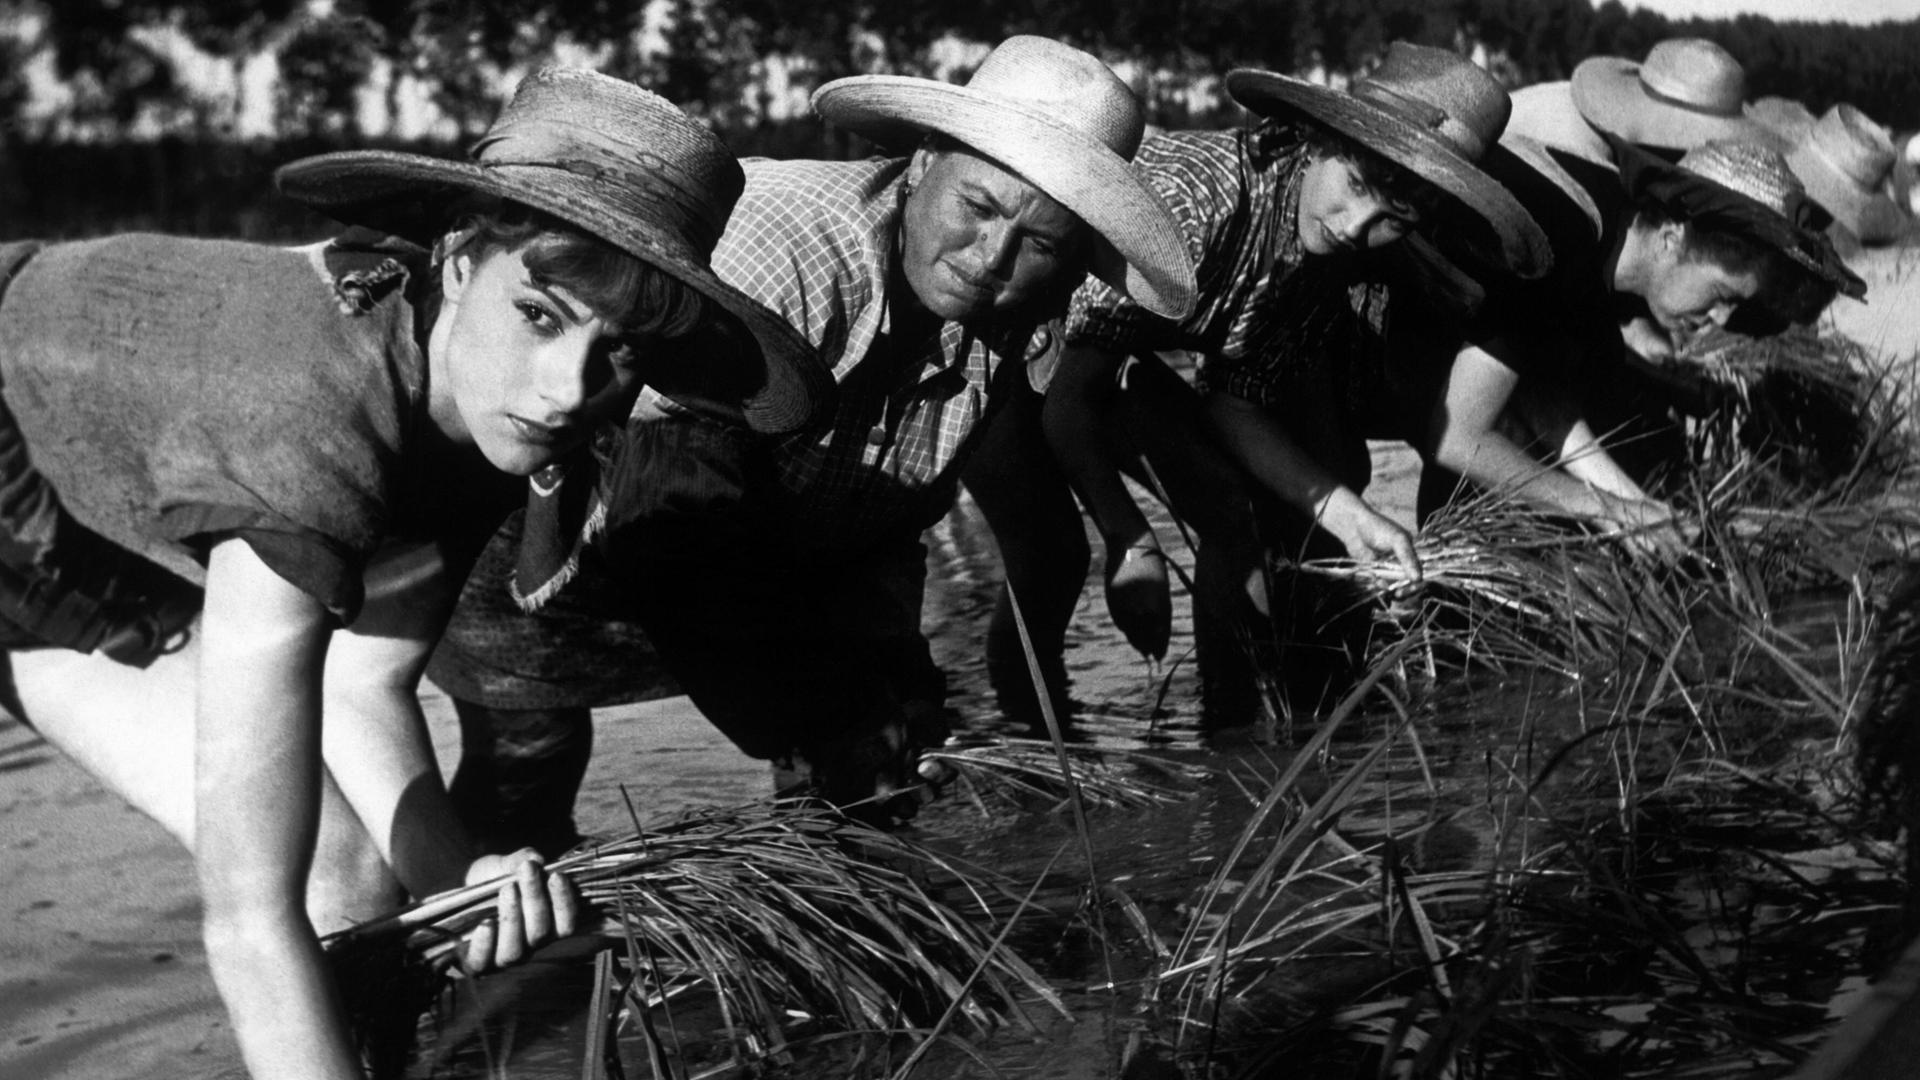 Landarbeiterinnen auf den Reisfeldern in der Poebene in Piemont in dem Film "Bitterer Reis" (Riso Amaro) von Giuseppe De Santis von 1949.